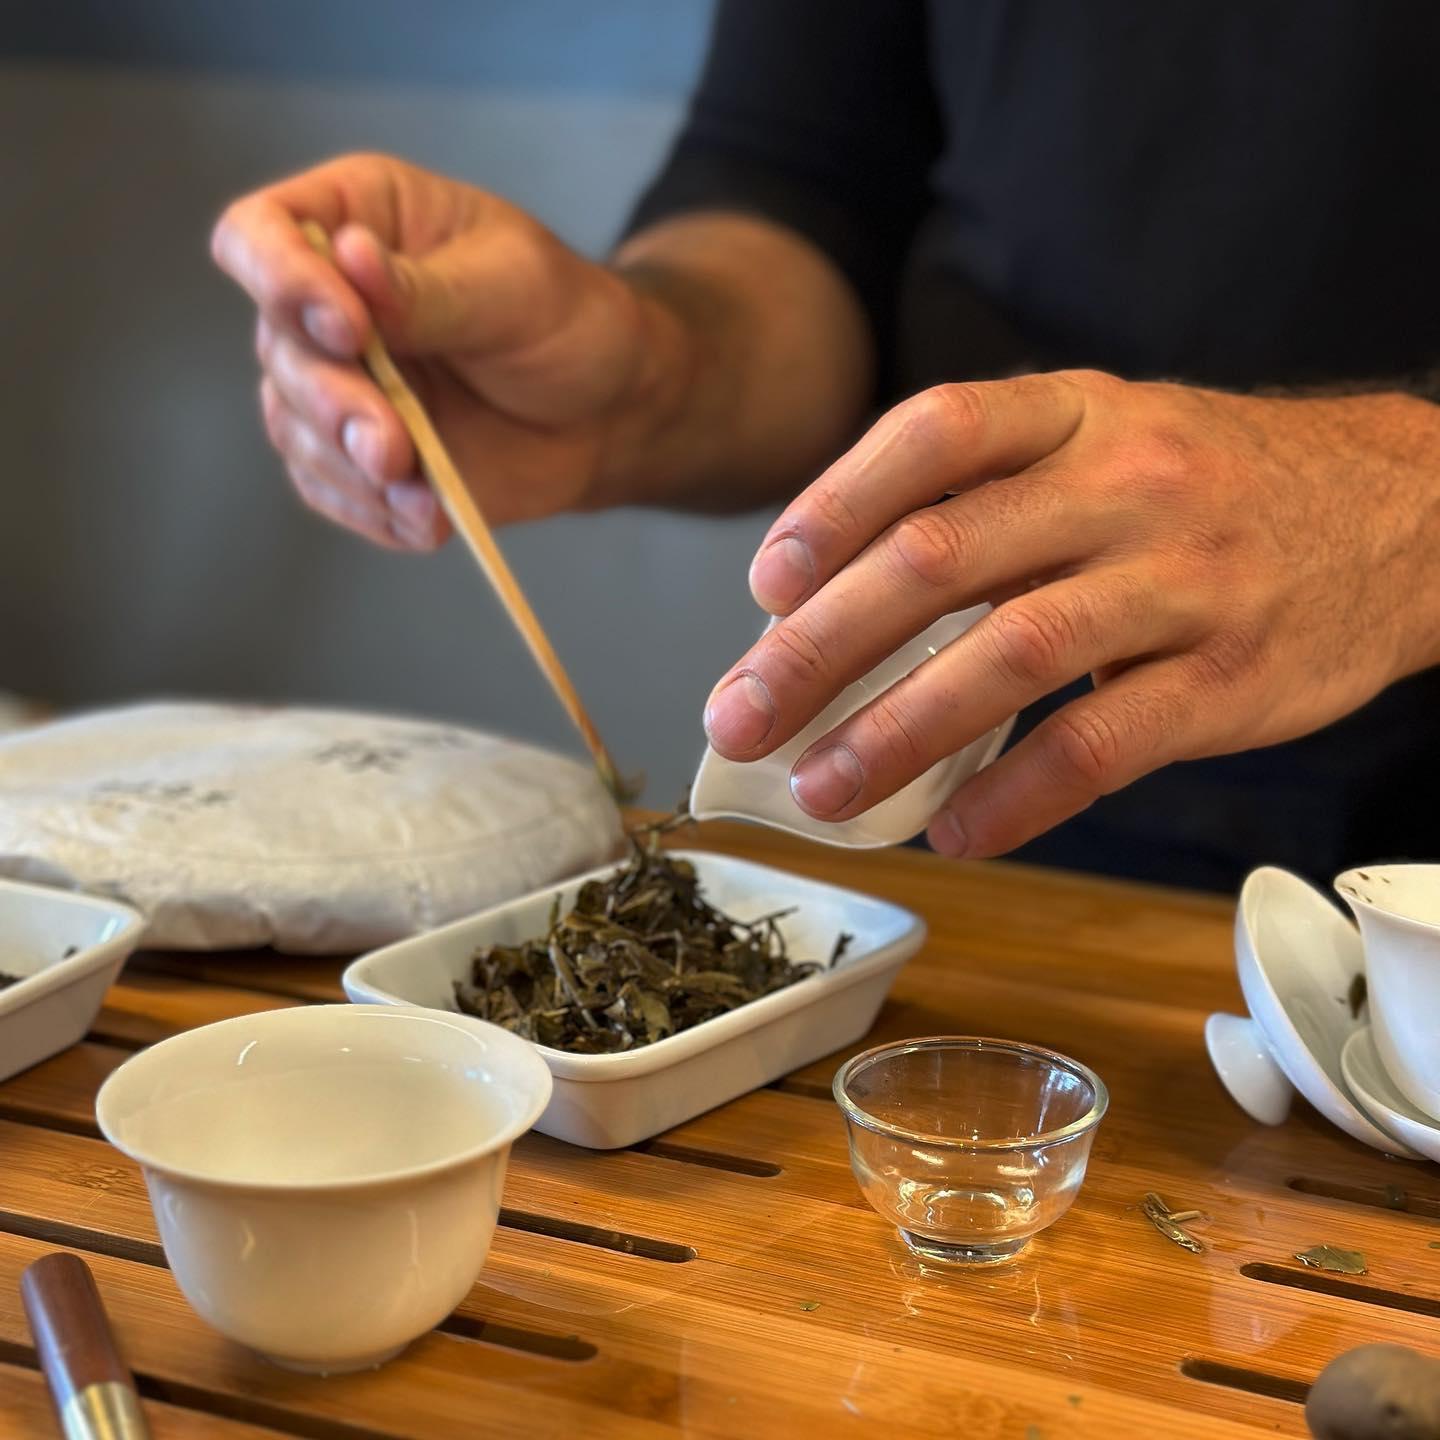 Cómo preparar tu té en la Tetera?